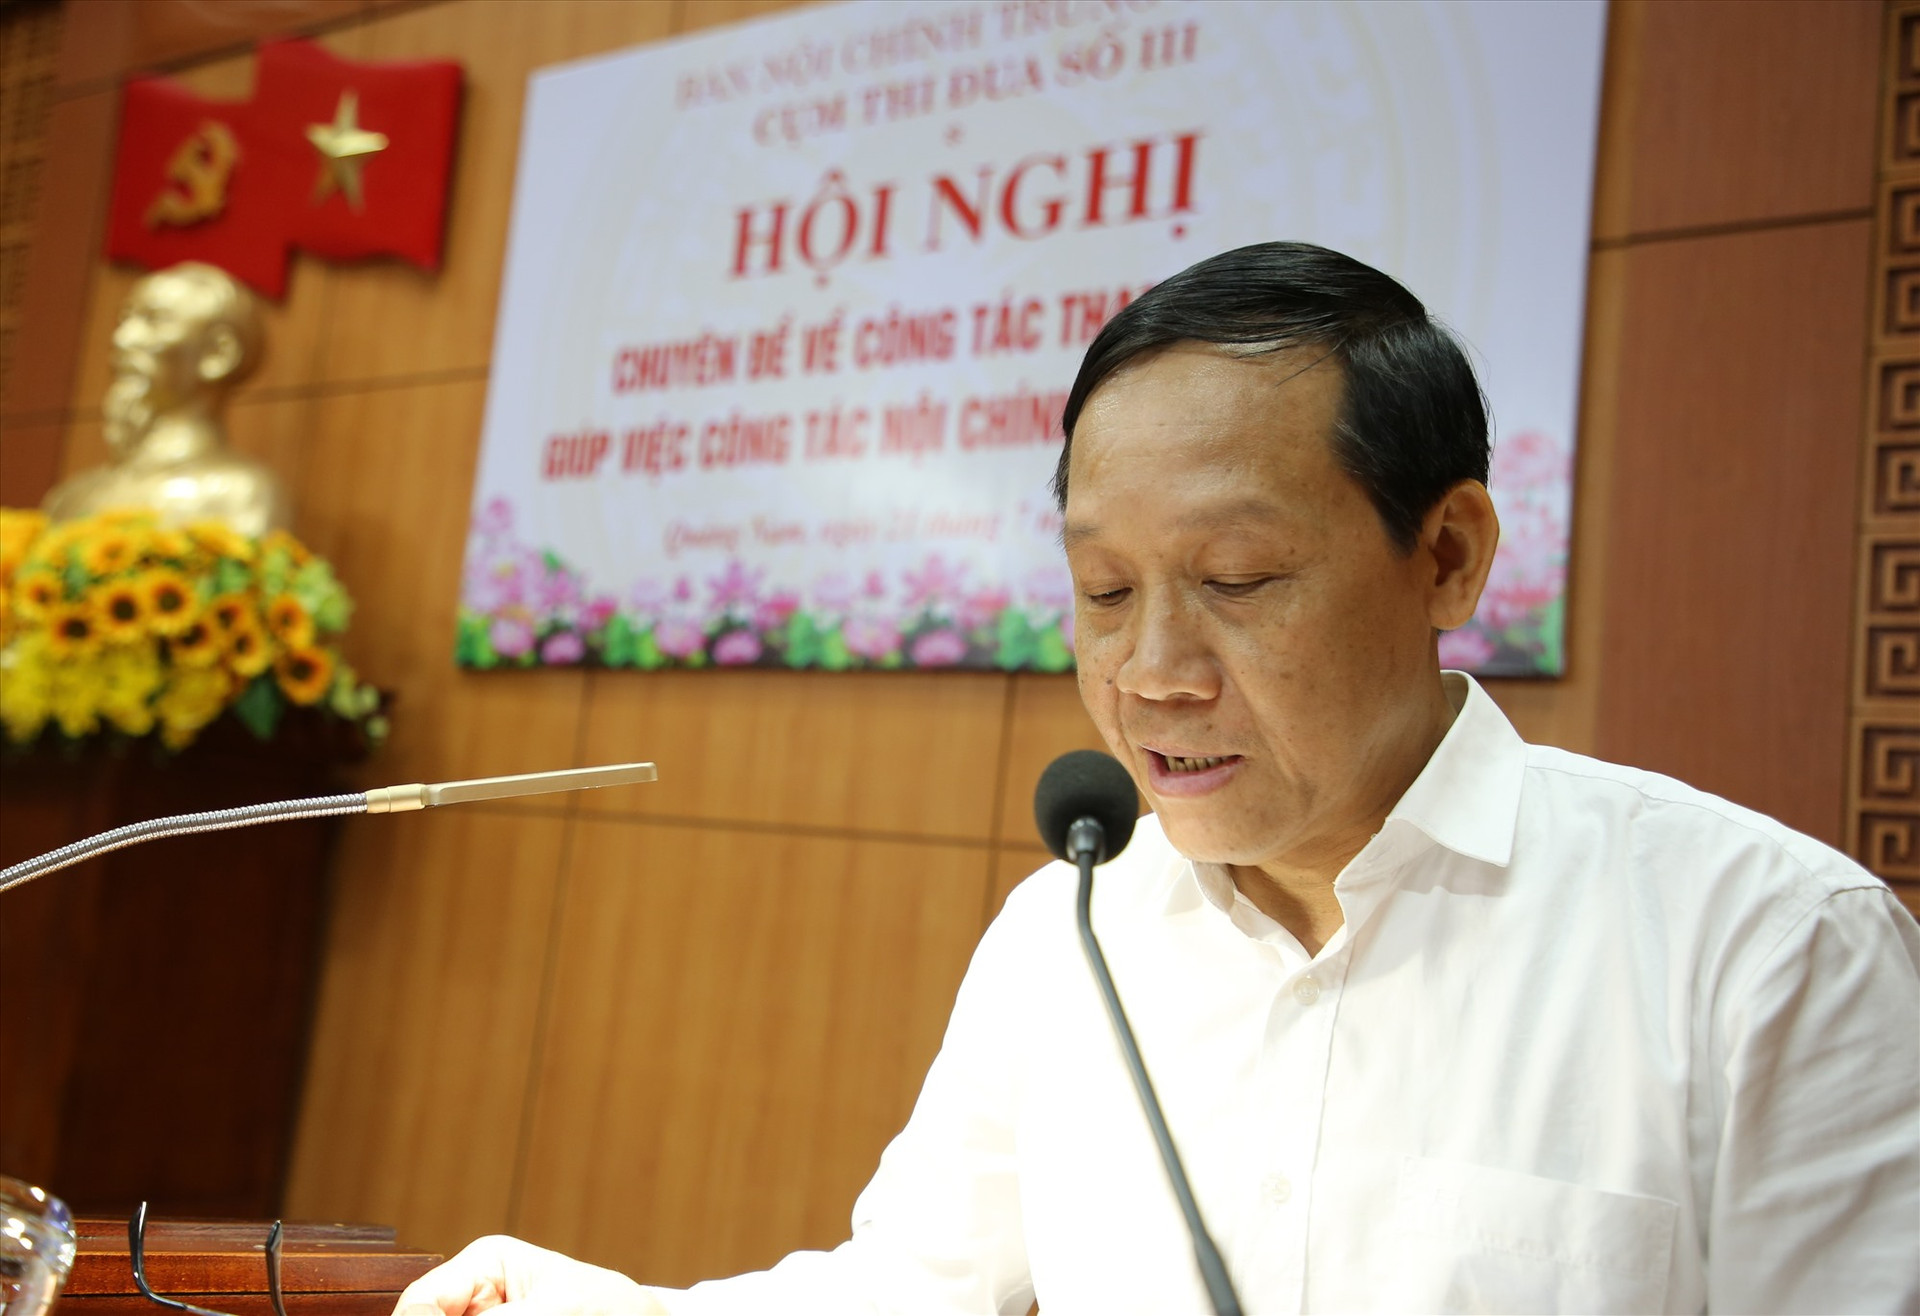 Phó Trưởng ban Nội chính Trung ương Nguyễn Thanh Hải kết luận hội nghị. Ảnh: A.N